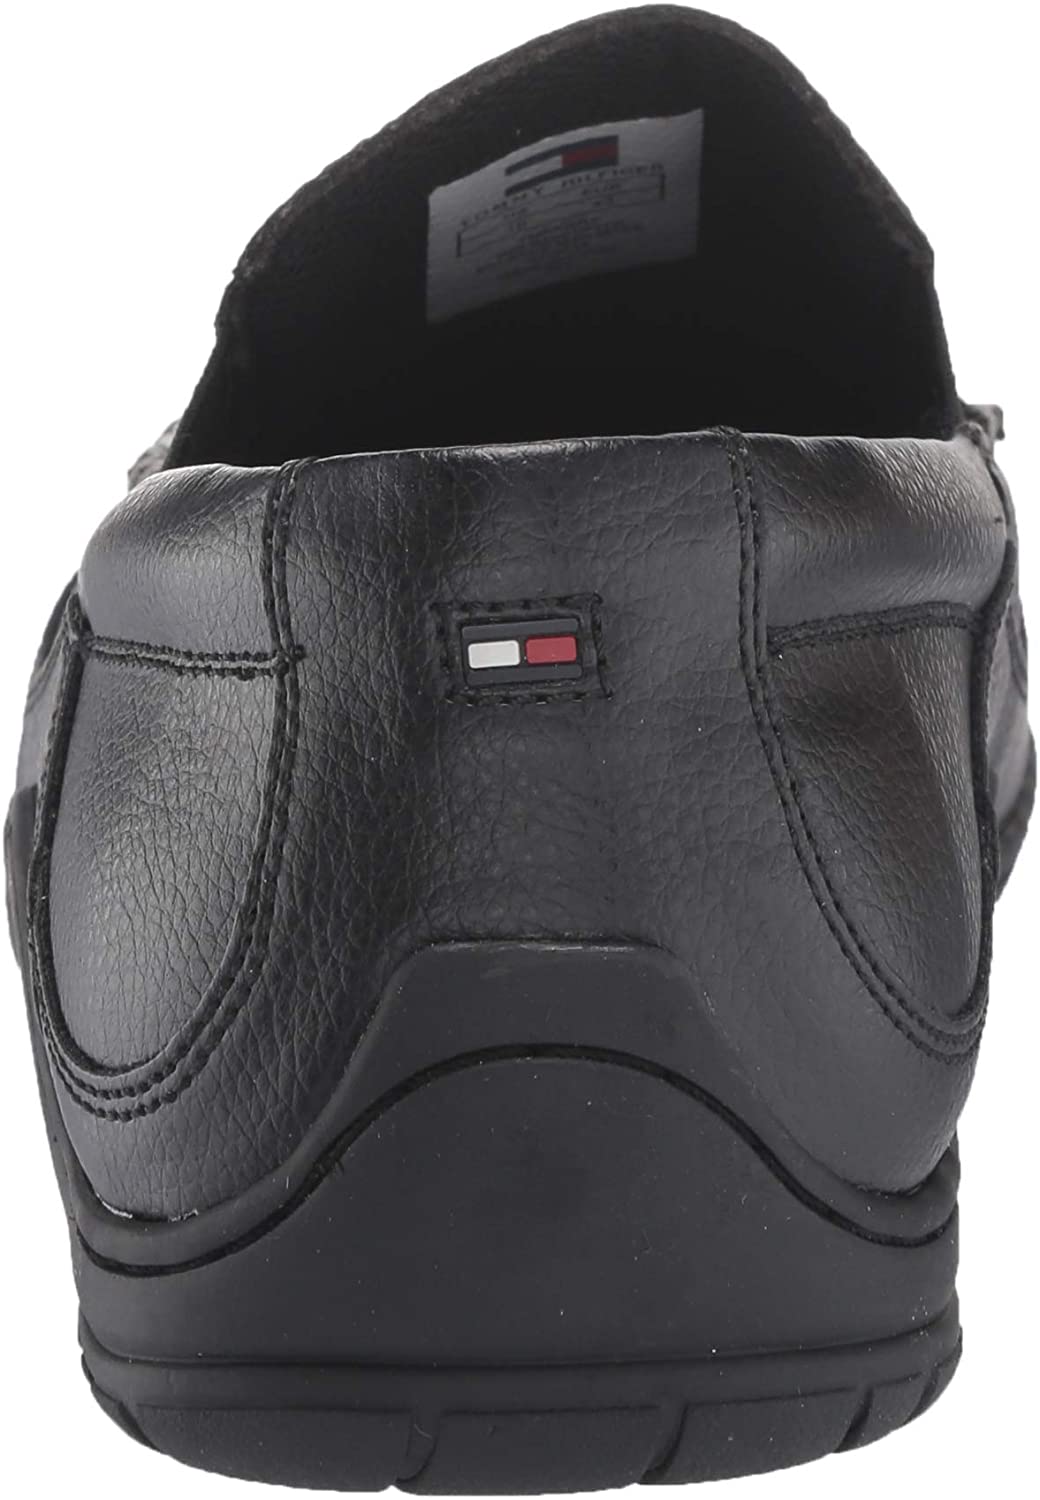 Tommy Hilfiger Men's Kerry Loafer  Color Black Size 11M